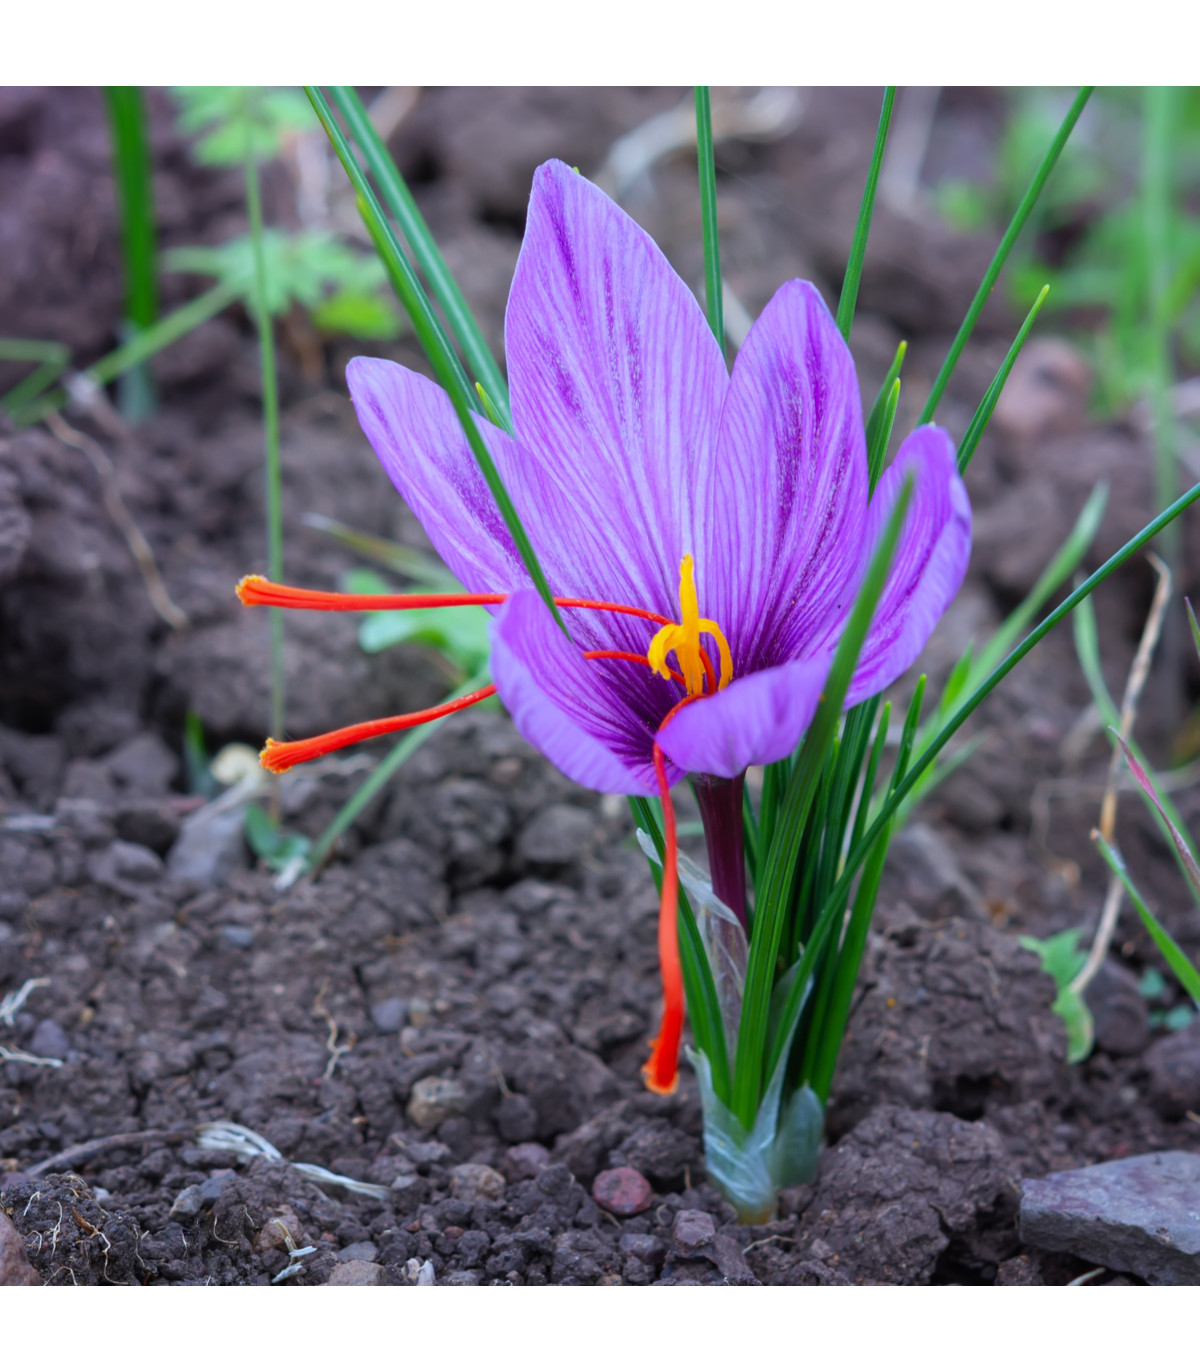 Šafrán setý - Crocus sativus - hlízy šafránu - 3 ks